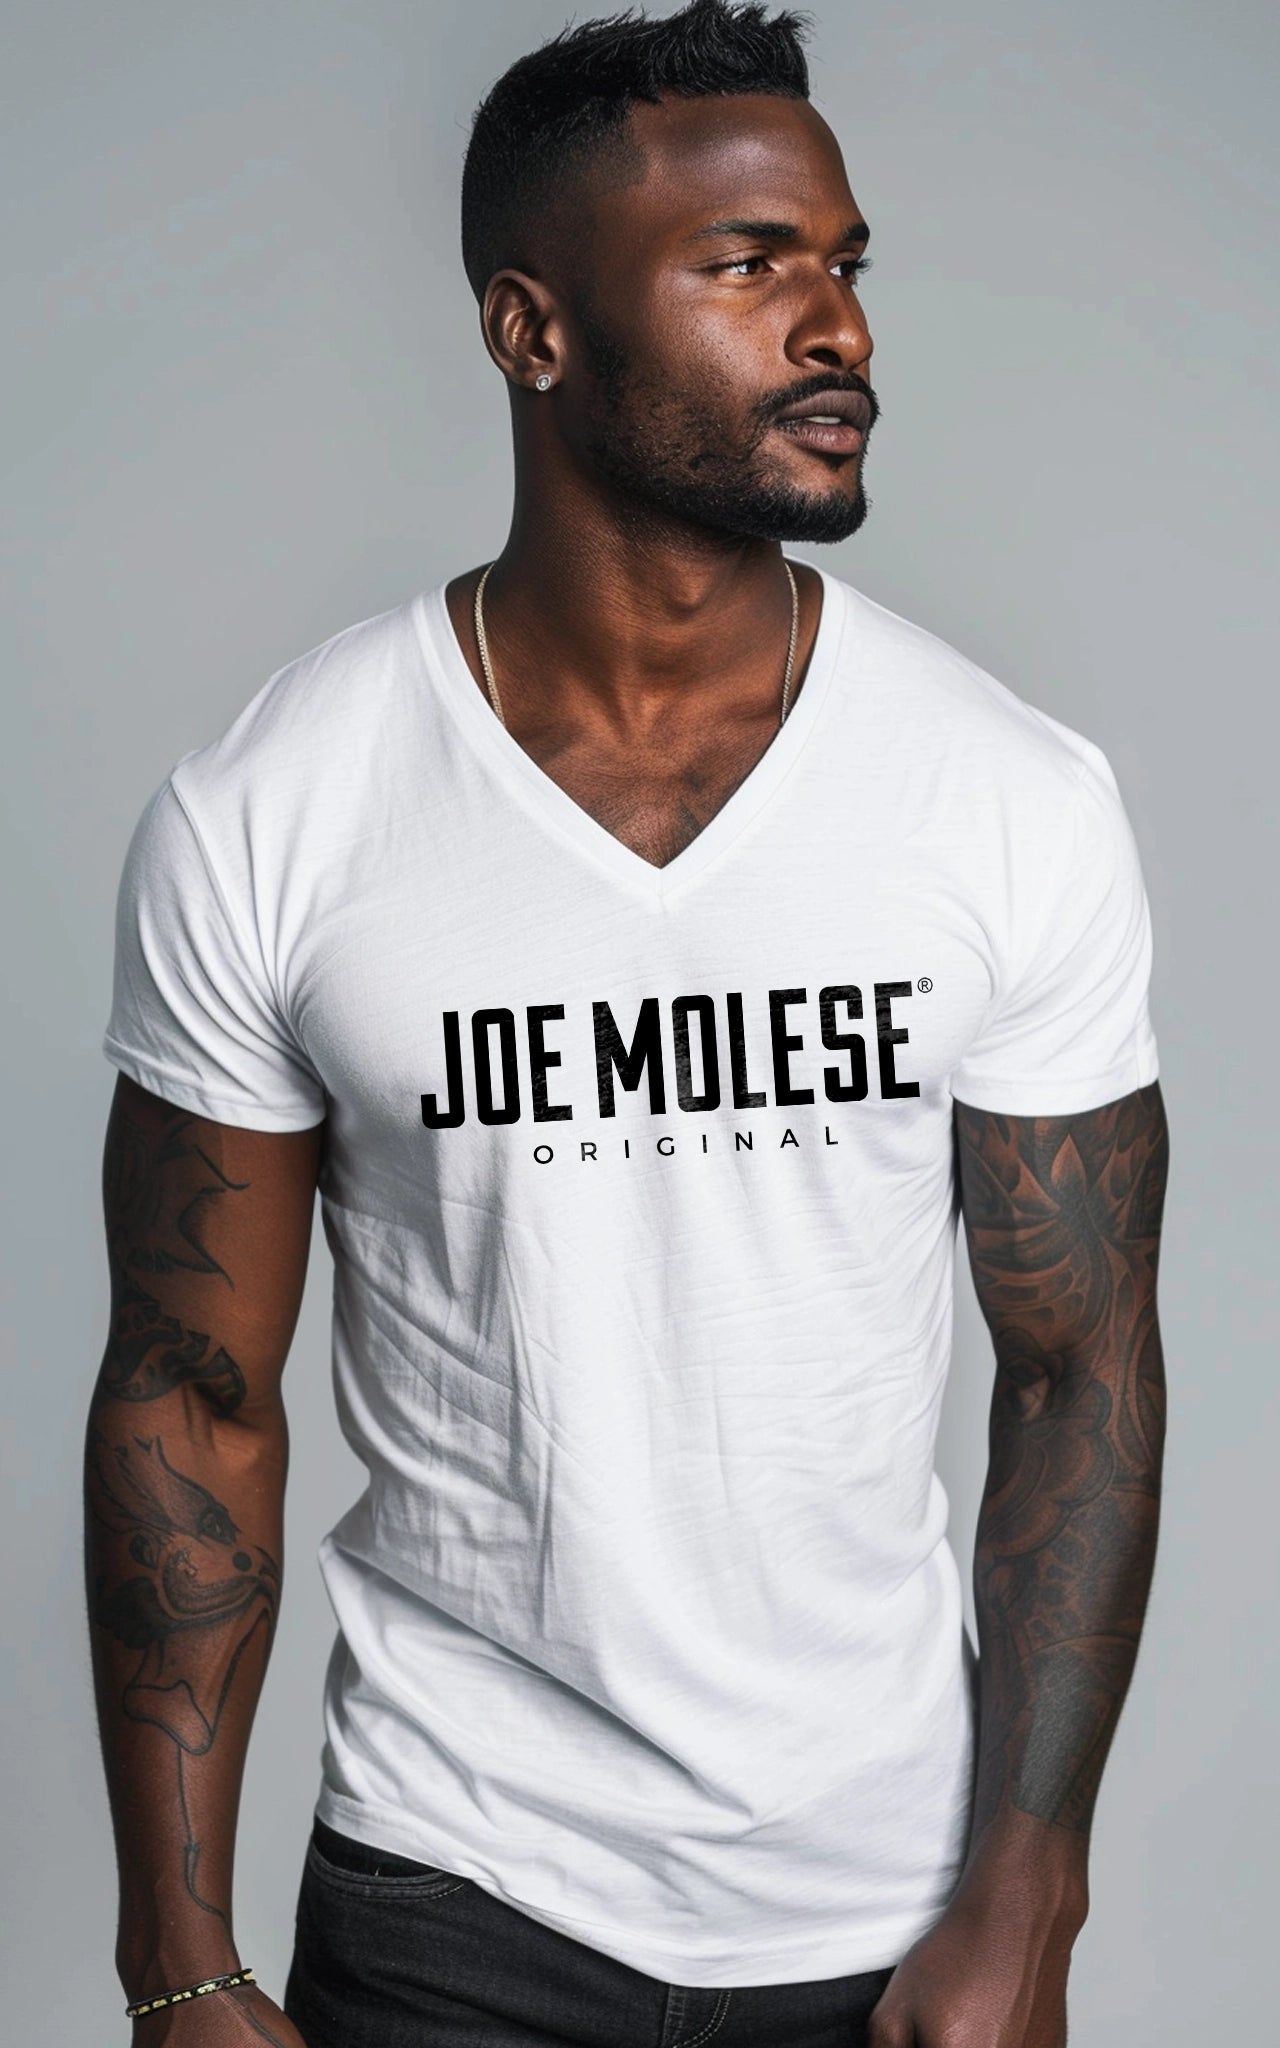 Joe Molese Original V-Neck Herren T-Shirt weiss